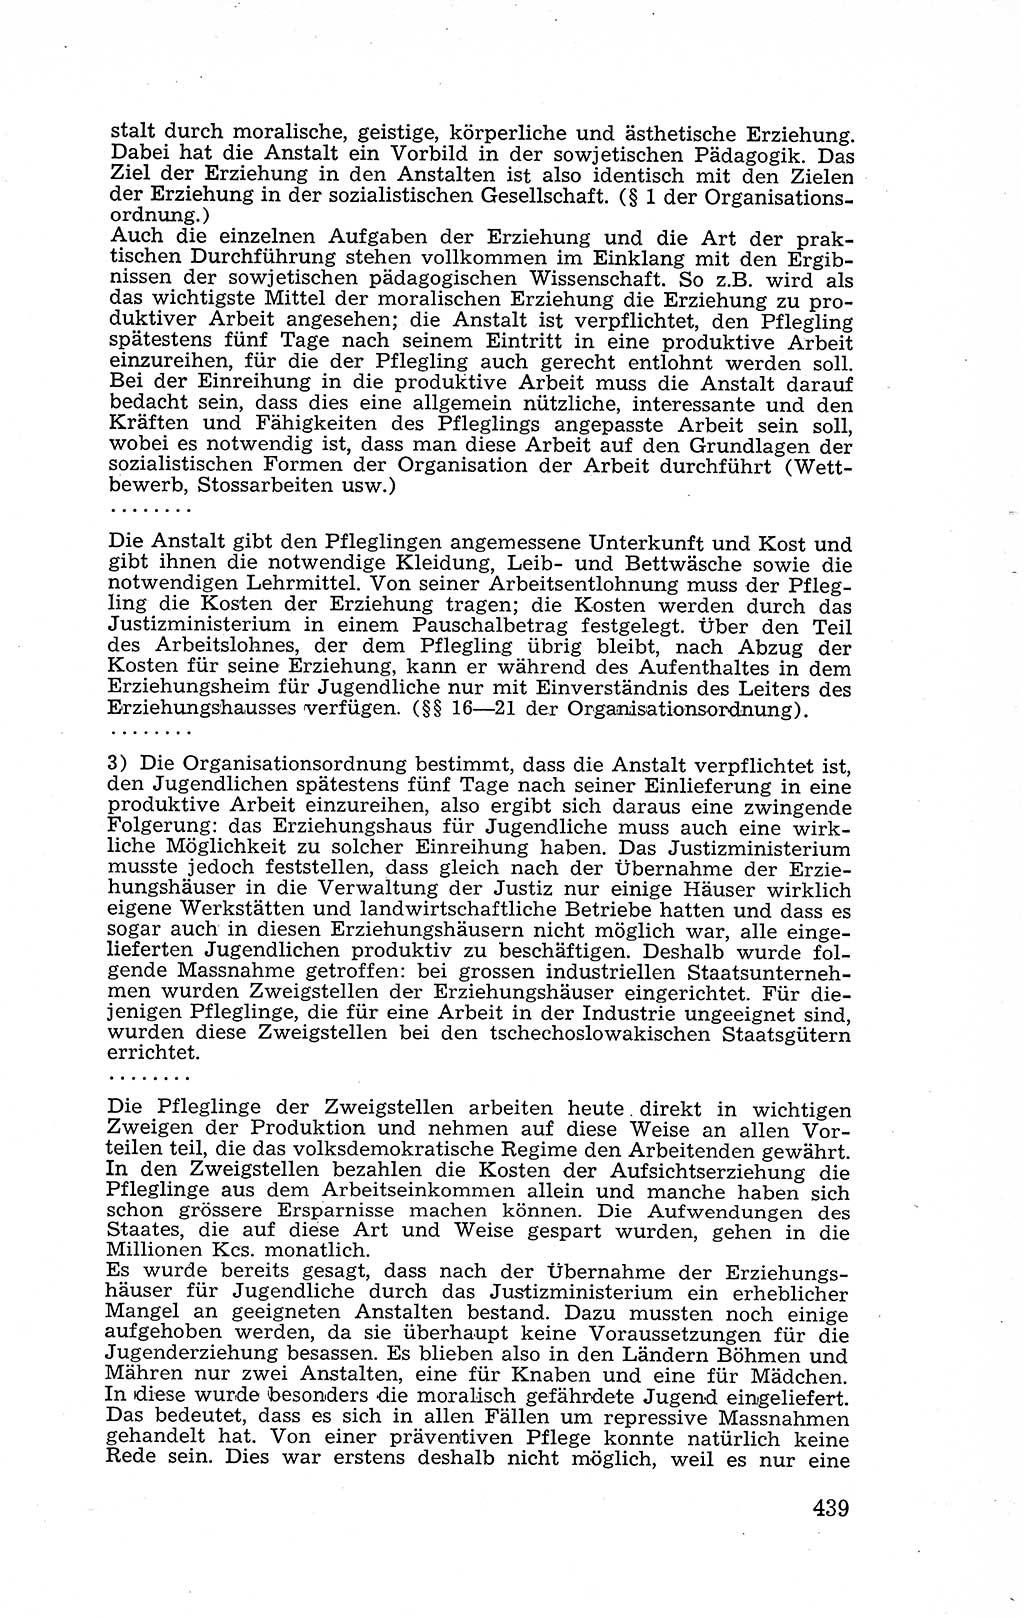 Recht in Fesseln, Dokumente, Internationale Juristen-Kommission [Bundesrepublik Deutschland (BRD)] 1955, Seite 439 (R. Dok. IJK BRD 1955, S. 439)